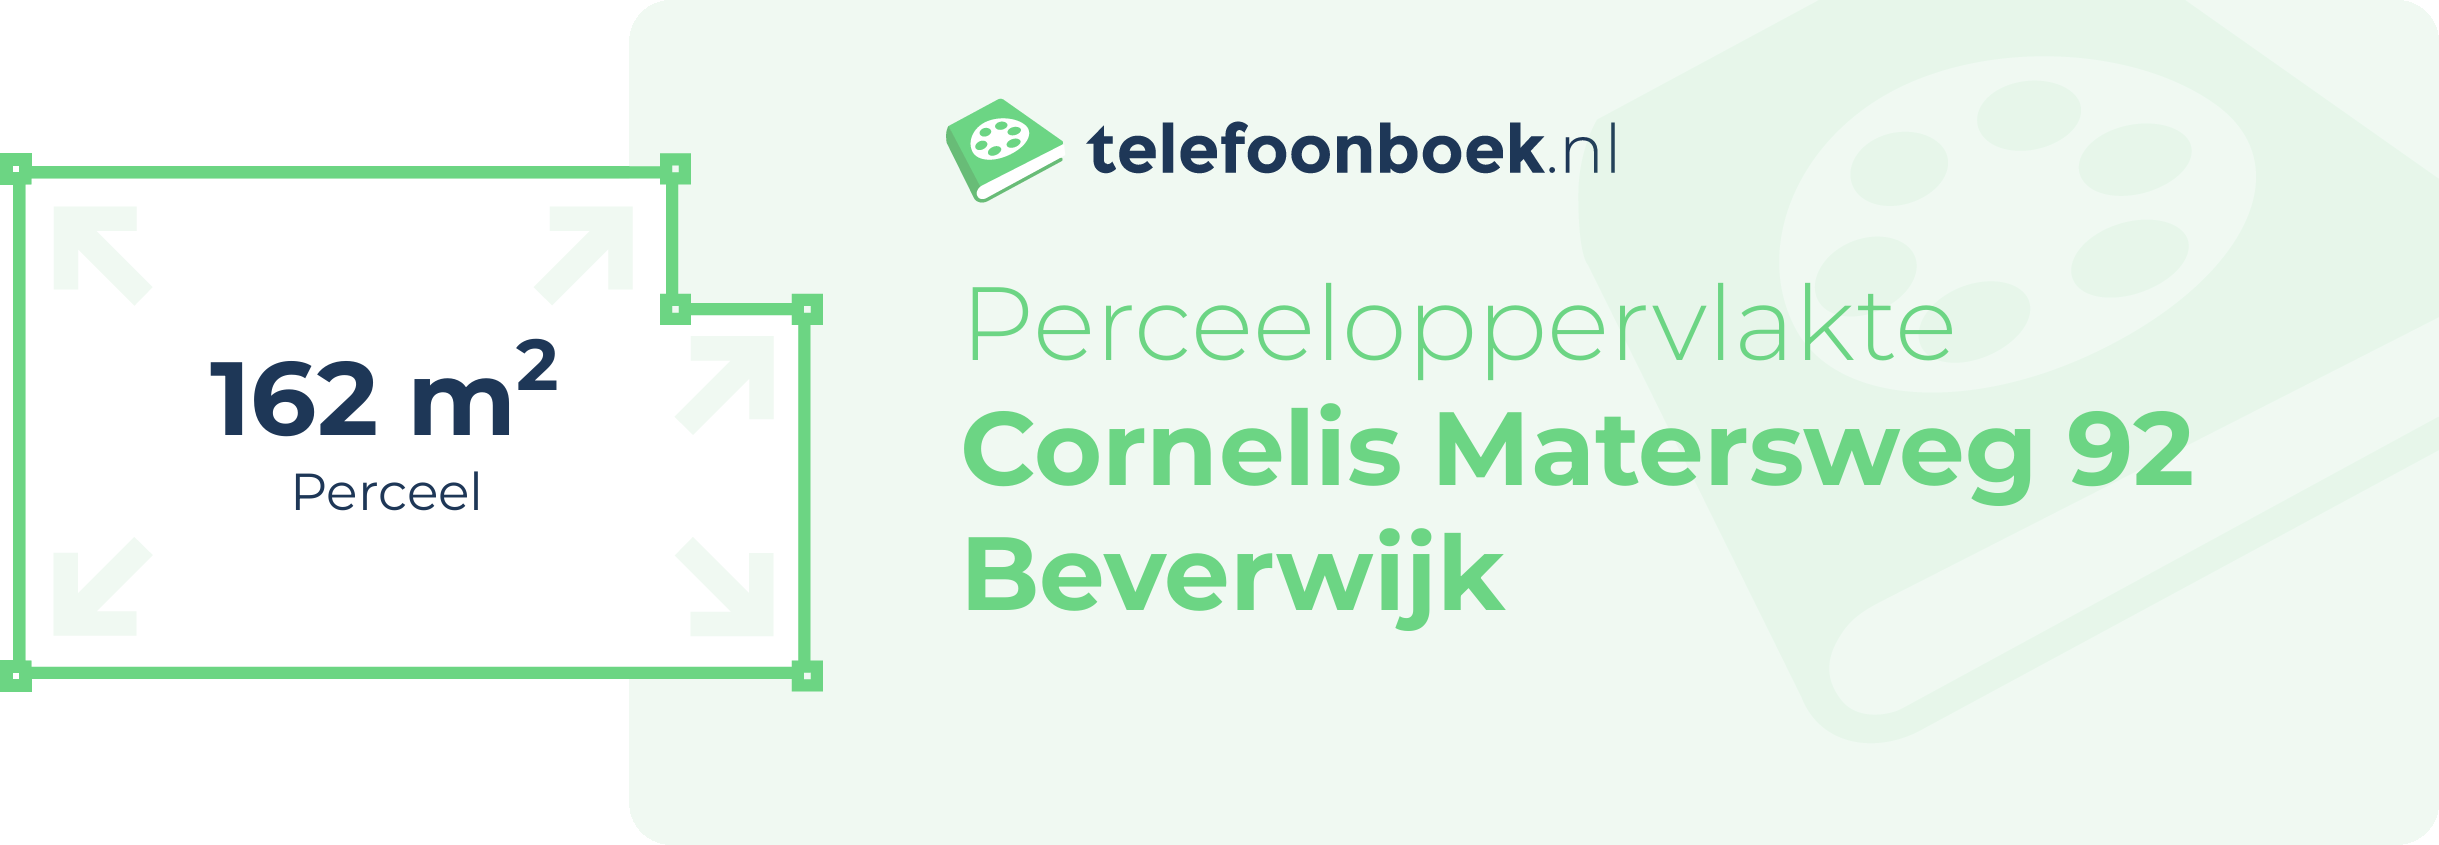 Perceeloppervlakte Cornelis Matersweg 92 Beverwijk